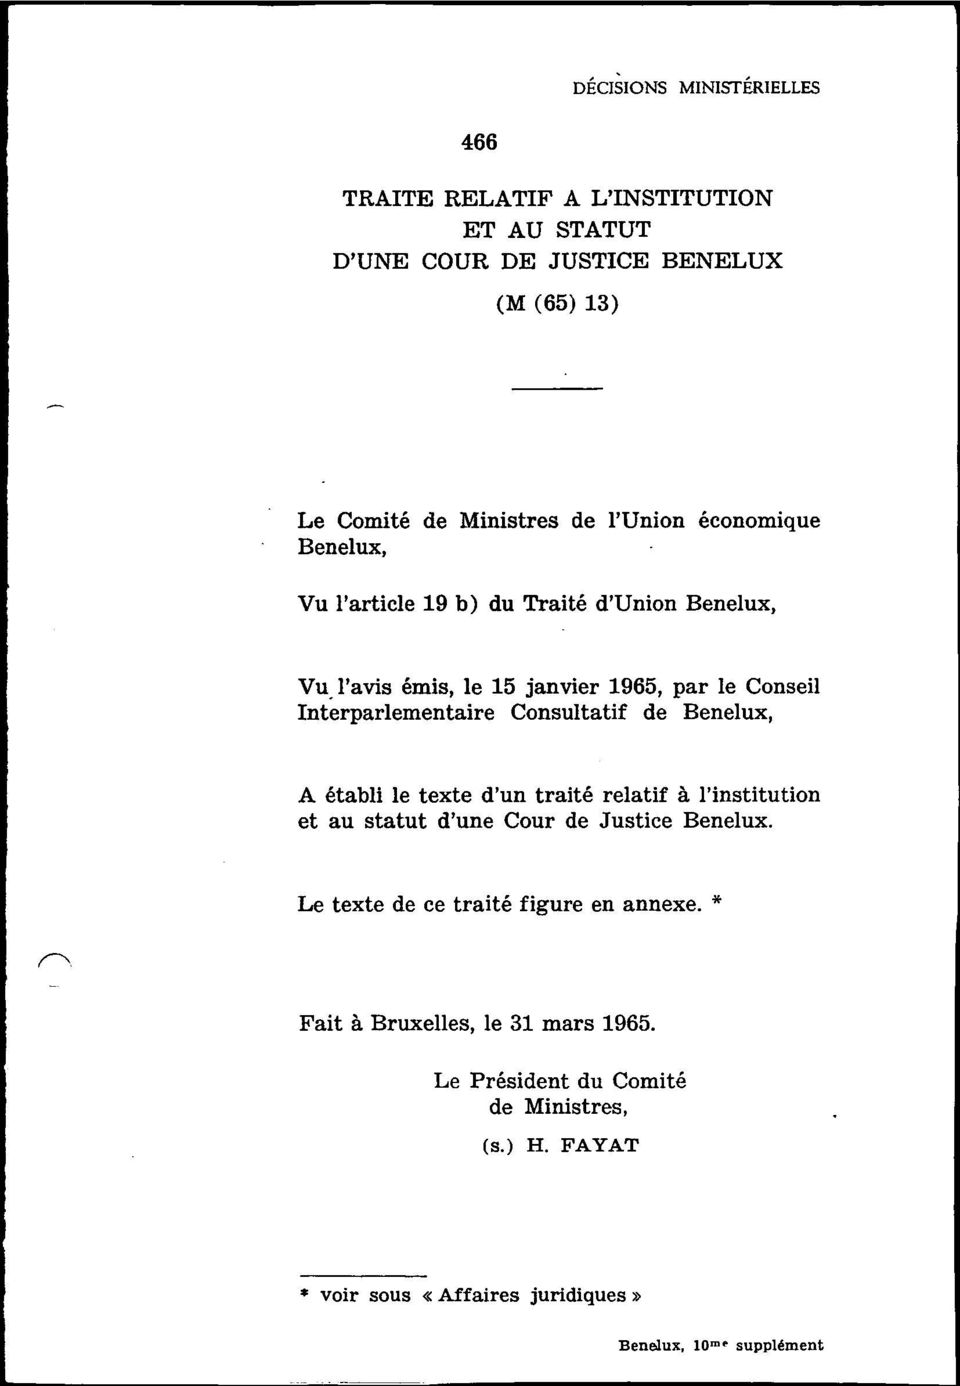 Consultatif de Benelux, A établi le texte d'un traité relatif à l'institution et au statut d'une Cour de Justice Benelux.